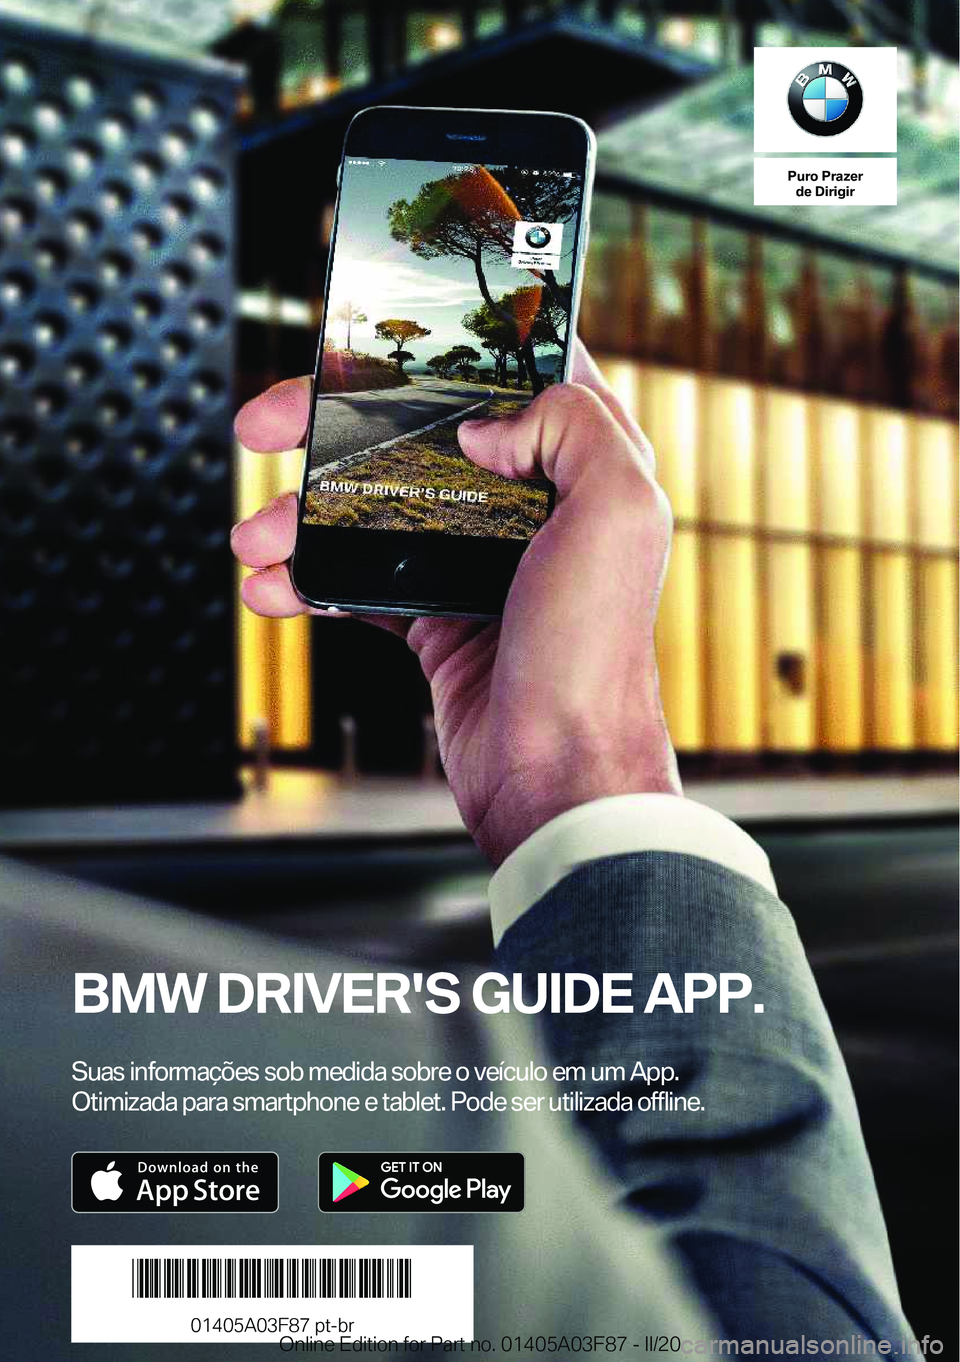 BMW 3 SERIES 2020  Manual do condutor (in Portuguese) �P�u�r�o��P�r�a�z�e�r�d�e��D�i�r�i�g�i�r
�B�M�W��D�R�I�V�E�R�'�S��G�U�I�D�E��A�P�P�.
�S�u�a�s��i�n�f�o�r�m�a�